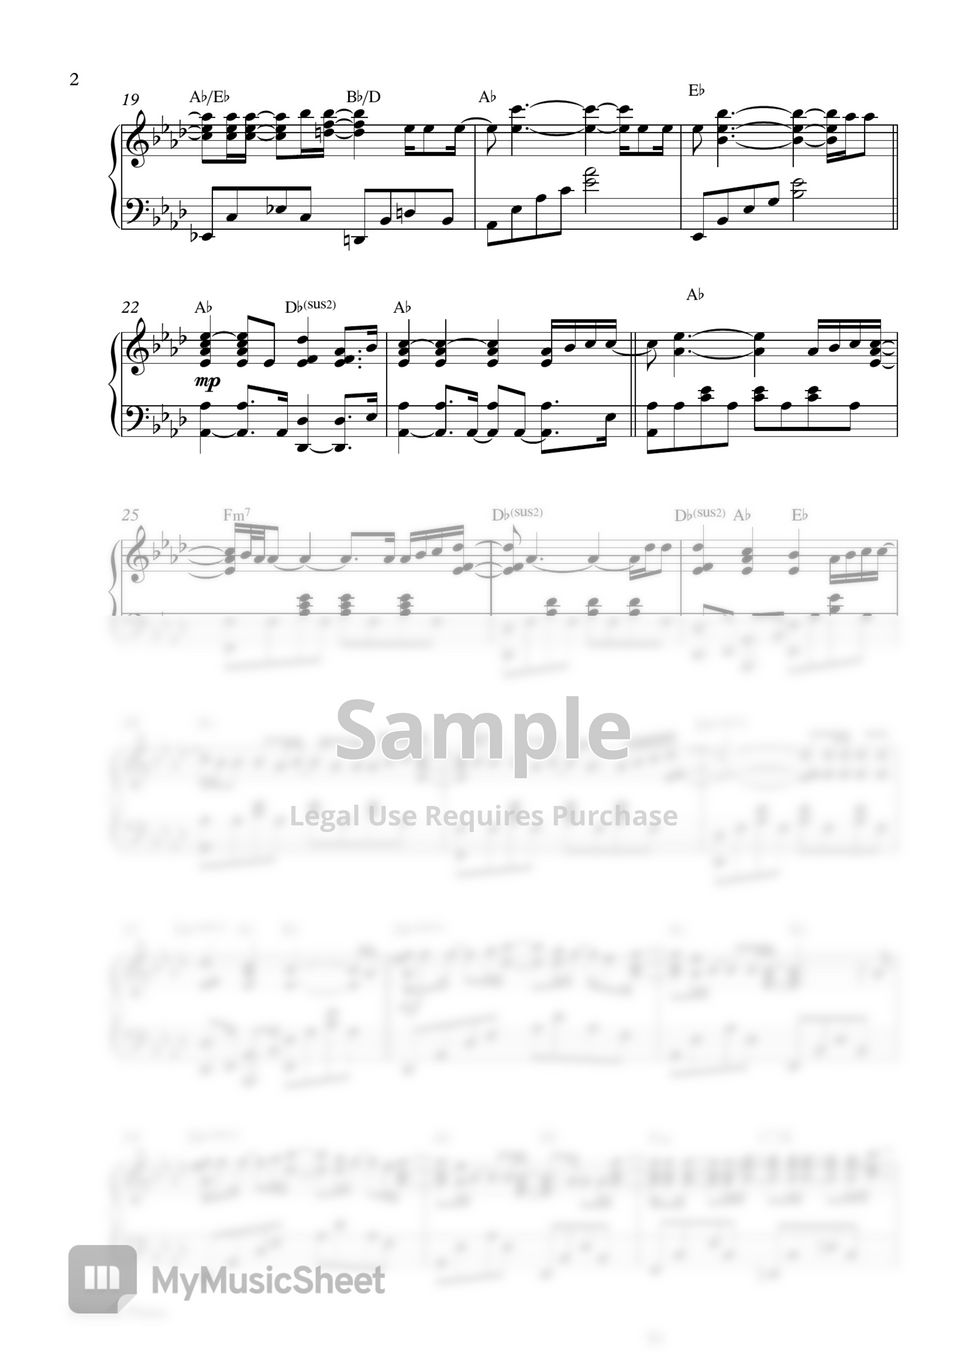 Ed Sheeran - Visiting Hours (Piano Sheet) by Pianella Piano